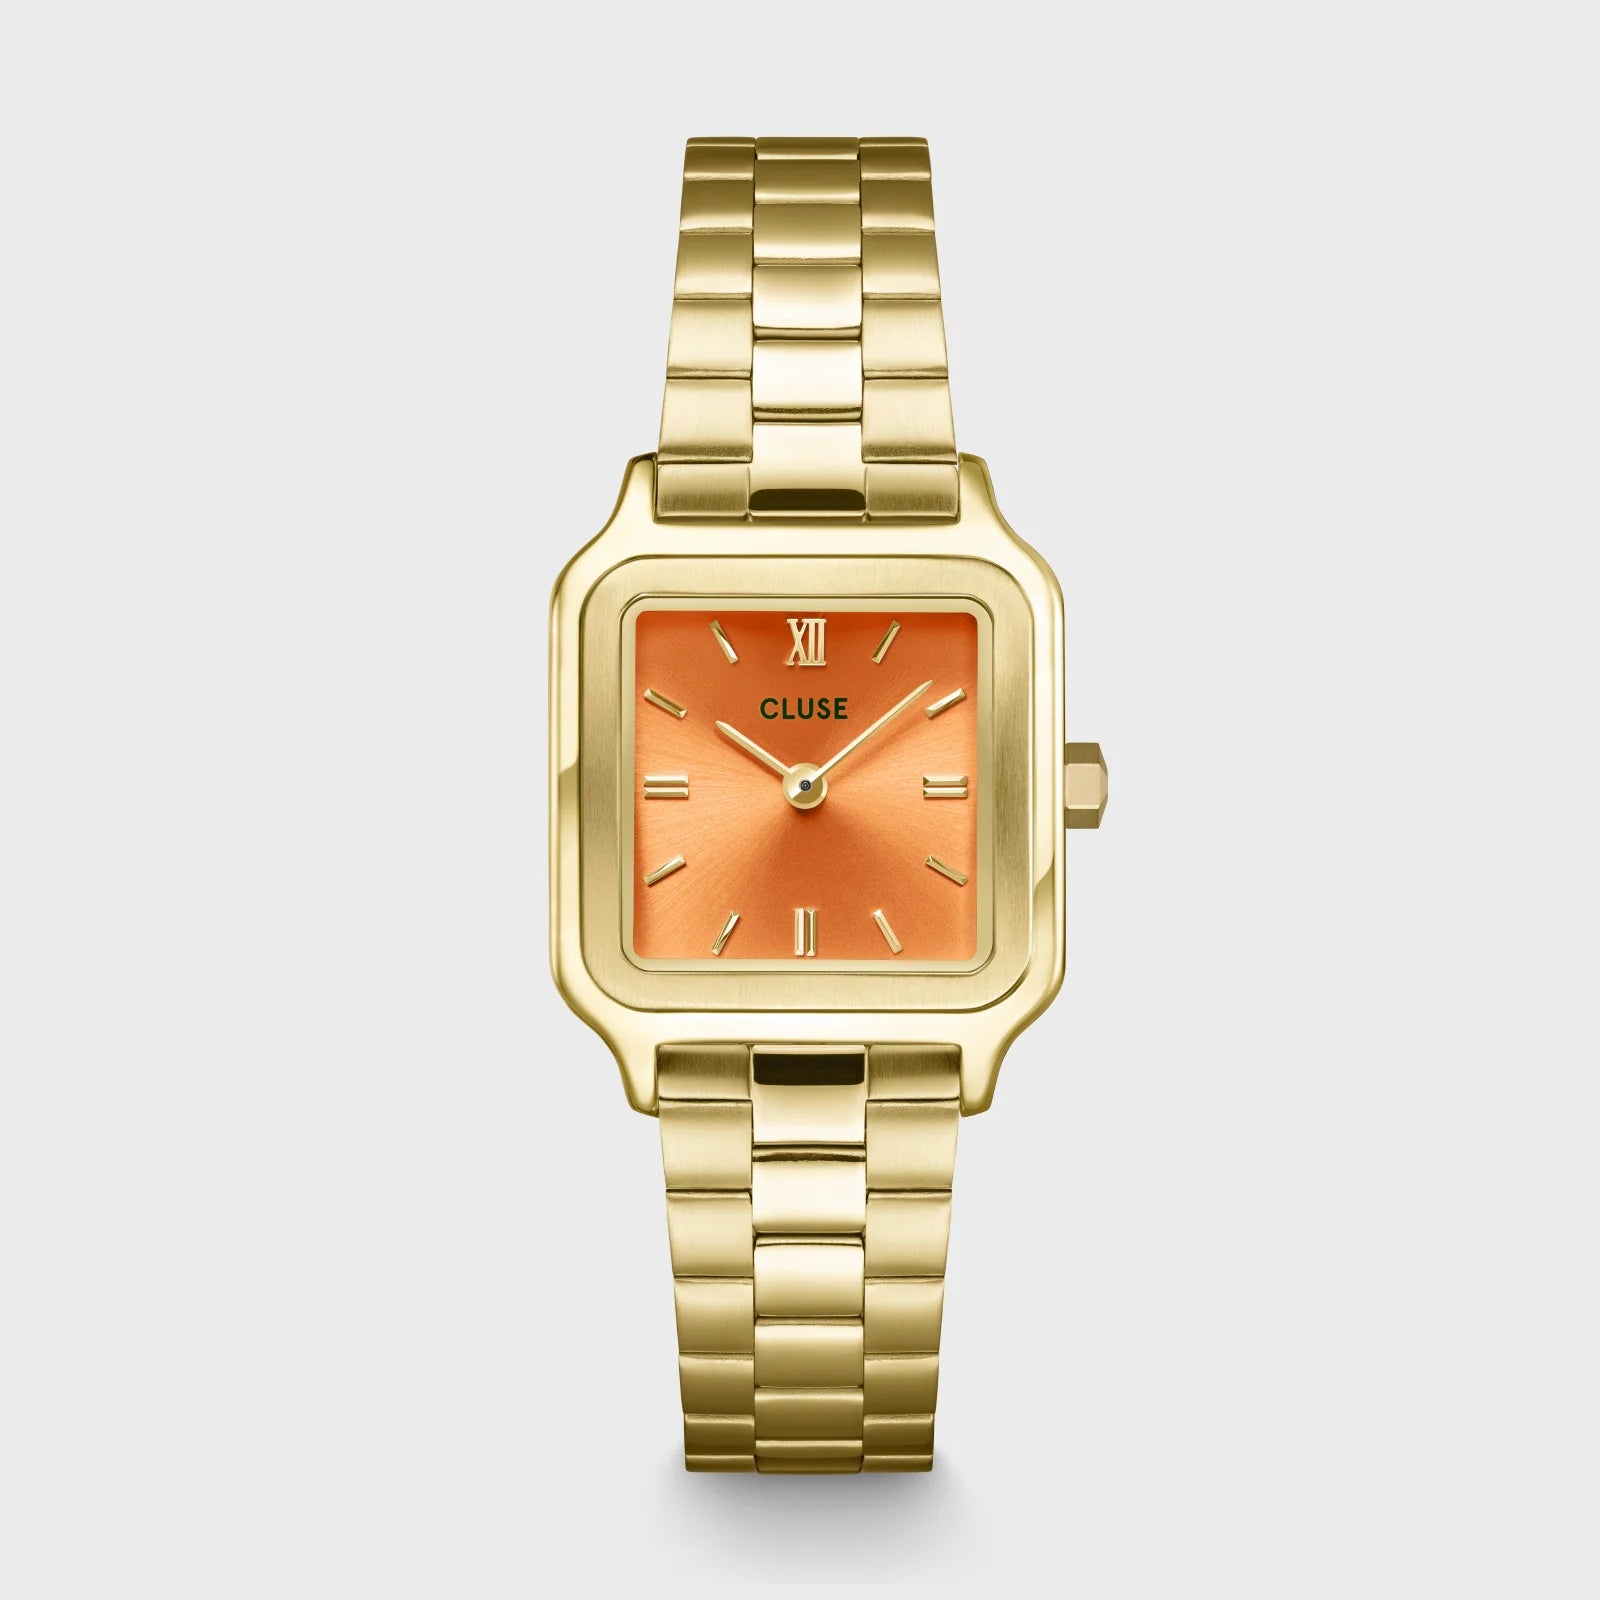 Frontale Ansicht der Cluse Stahl-Uhr "Gracieuse Petite" mit einem gelbgold-farbenem Gehäuse und orangem Zifferblatt